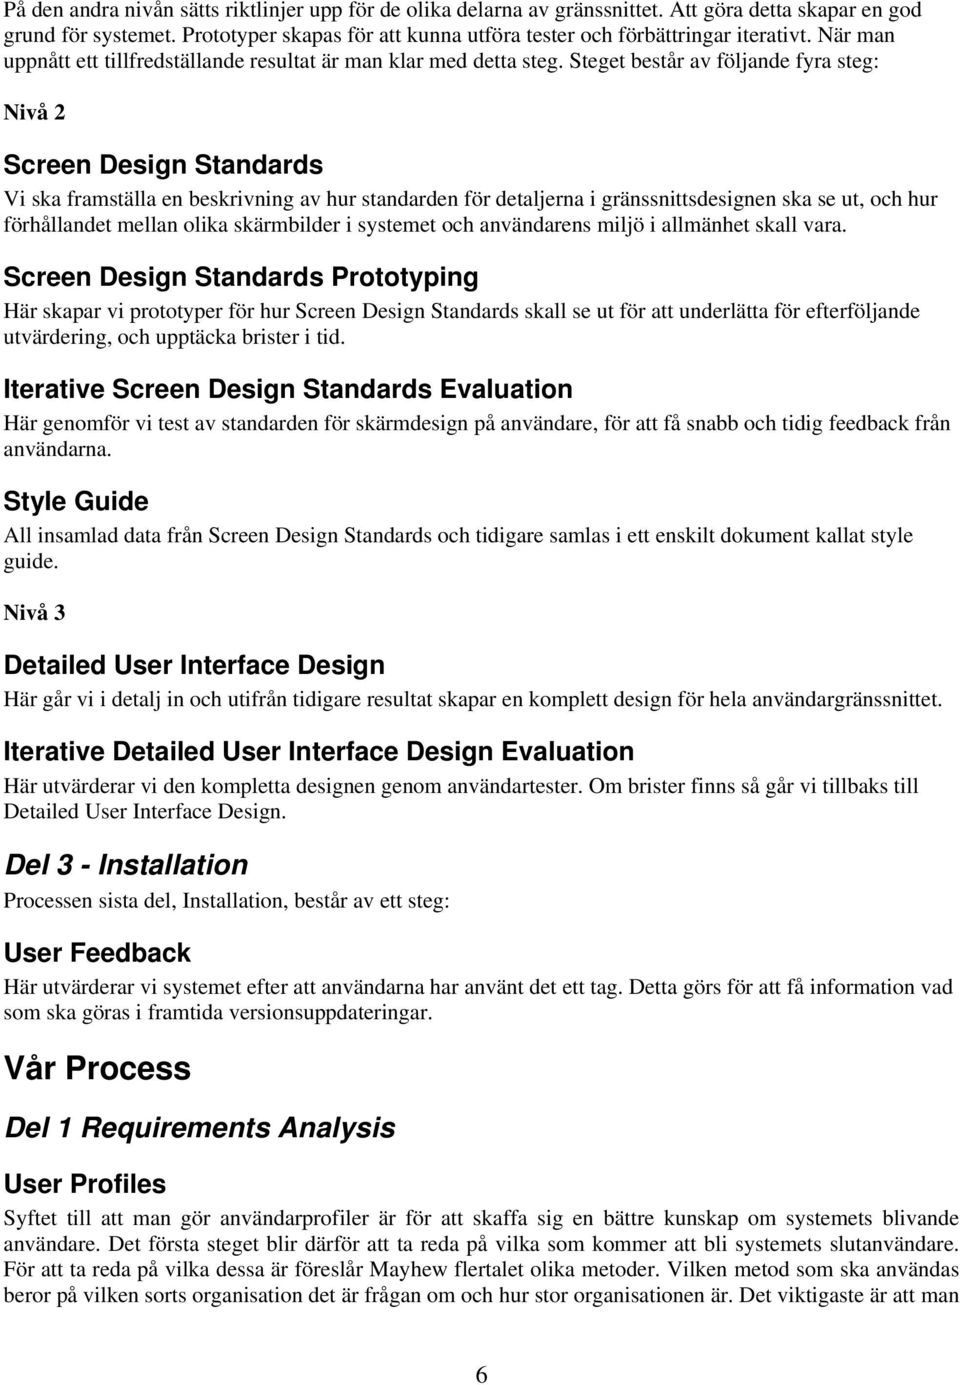 Steget består av följande fyra steg: Nivå 2 Screen Design Standards Vi ska framställa en beskrivning av hur standarden för detaljerna i gränssnittsdesignen ska se ut, och hur förhållandet mellan